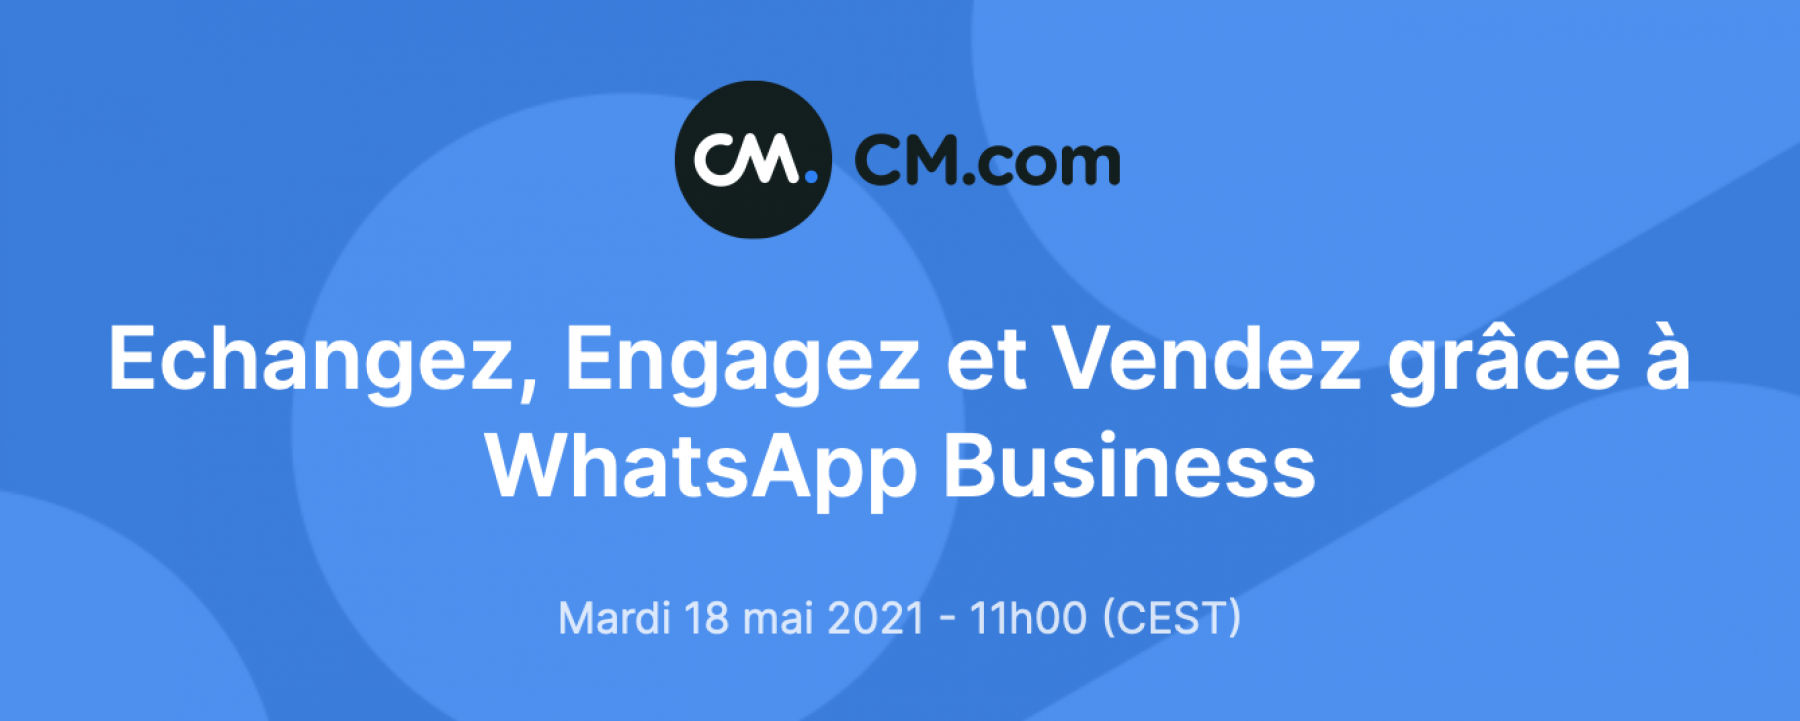 Echangez, Engagez et Vendez grâce à WhatsApp Business, le 18 mai 2021 par CM.com